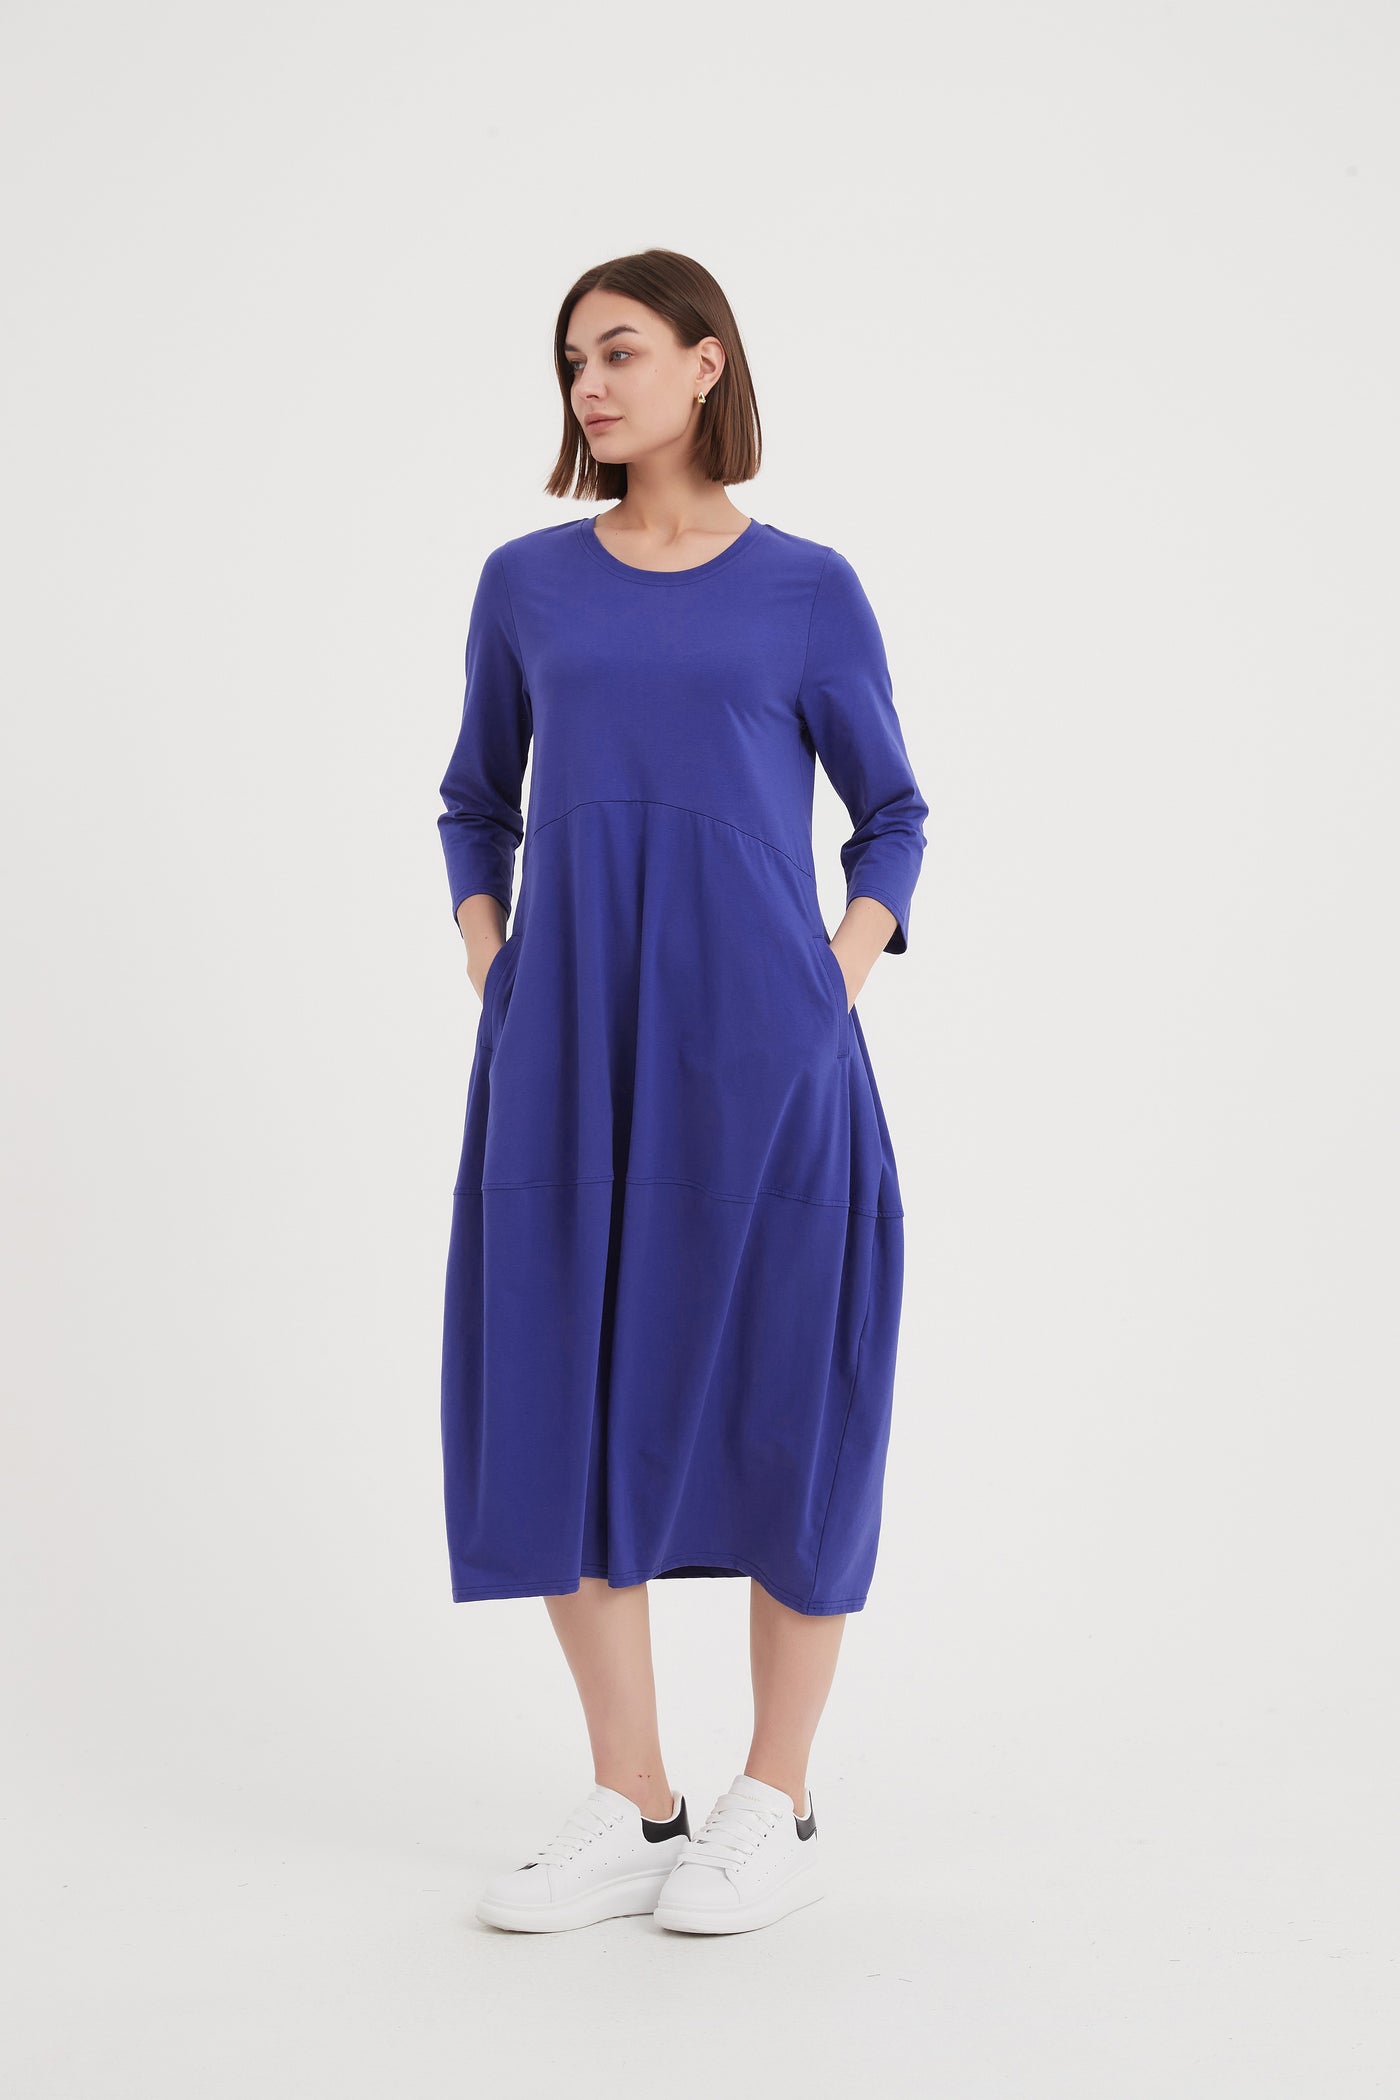 Plus Size Women’s Clothing Australia | Tirelli - TIRELLI